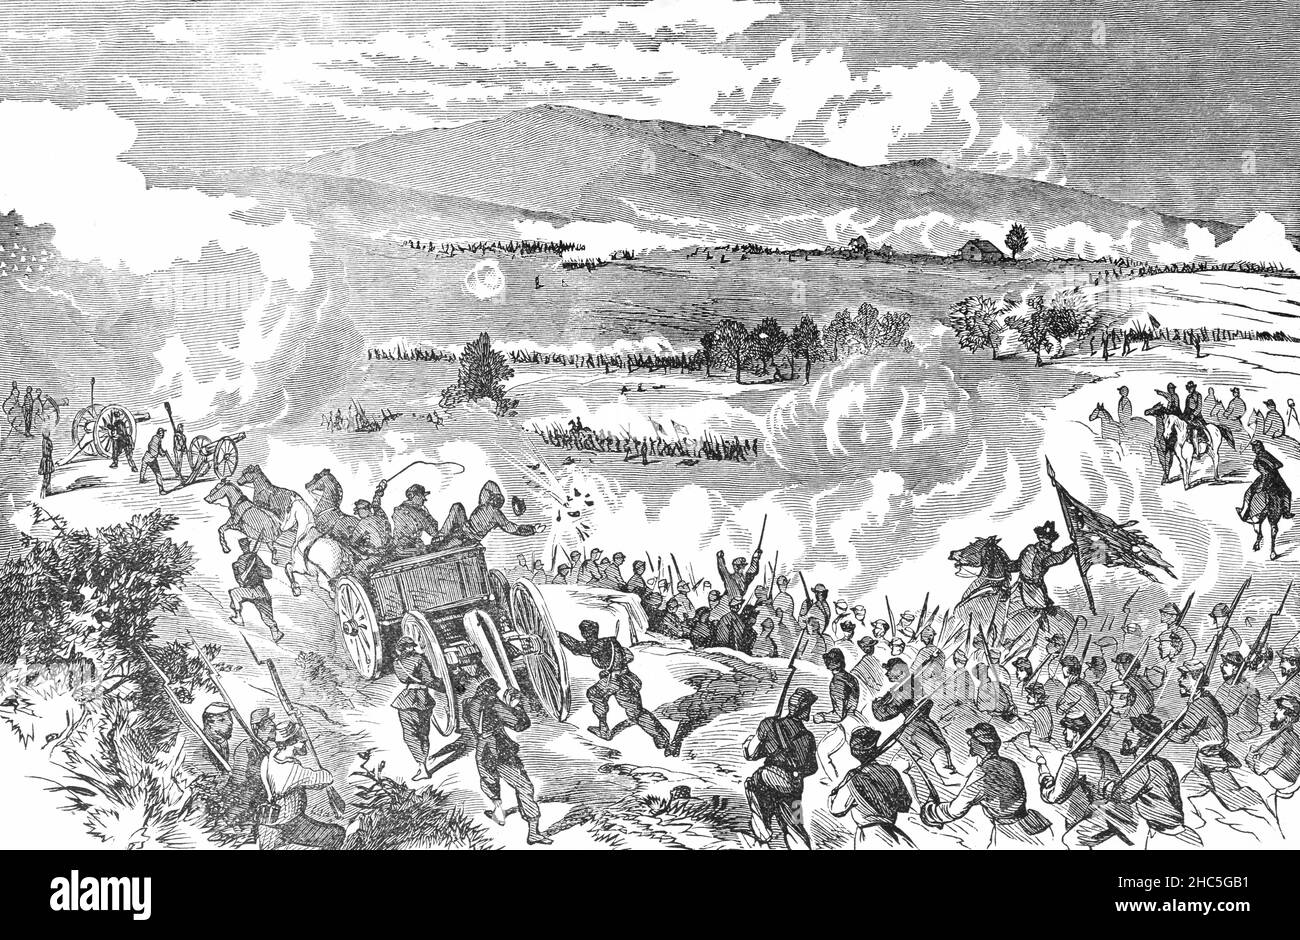 Eine Illustration der Schlacht von Gettysburg aus dem späten 19th. Jahrhundert, die vom 1. Bis 3. Juli 1863 in und um die Stadt Gettysburg, Pennsylvania, von Truppen der Union und der Konföderierten während des amerikanischen Bürgerkrieges geführt wurde. In der Schlacht besiegte die Potomac-Armee von Union Maj. General George Meade Angriffe des konföderierten Generals Robert E. Lees Armee von Nord-Virginia, was Lees Invasion des Nordens untersagte. Die Schlacht war mit der größten Anzahl von Opfern des gesamten Krieges verbunden und wird oft als Wendepunkt des Krieges beschrieben, der auf den entscheidenden Sieg der Union und die Belagerung von Vicksburg zurückzuführen ist. Stockfoto